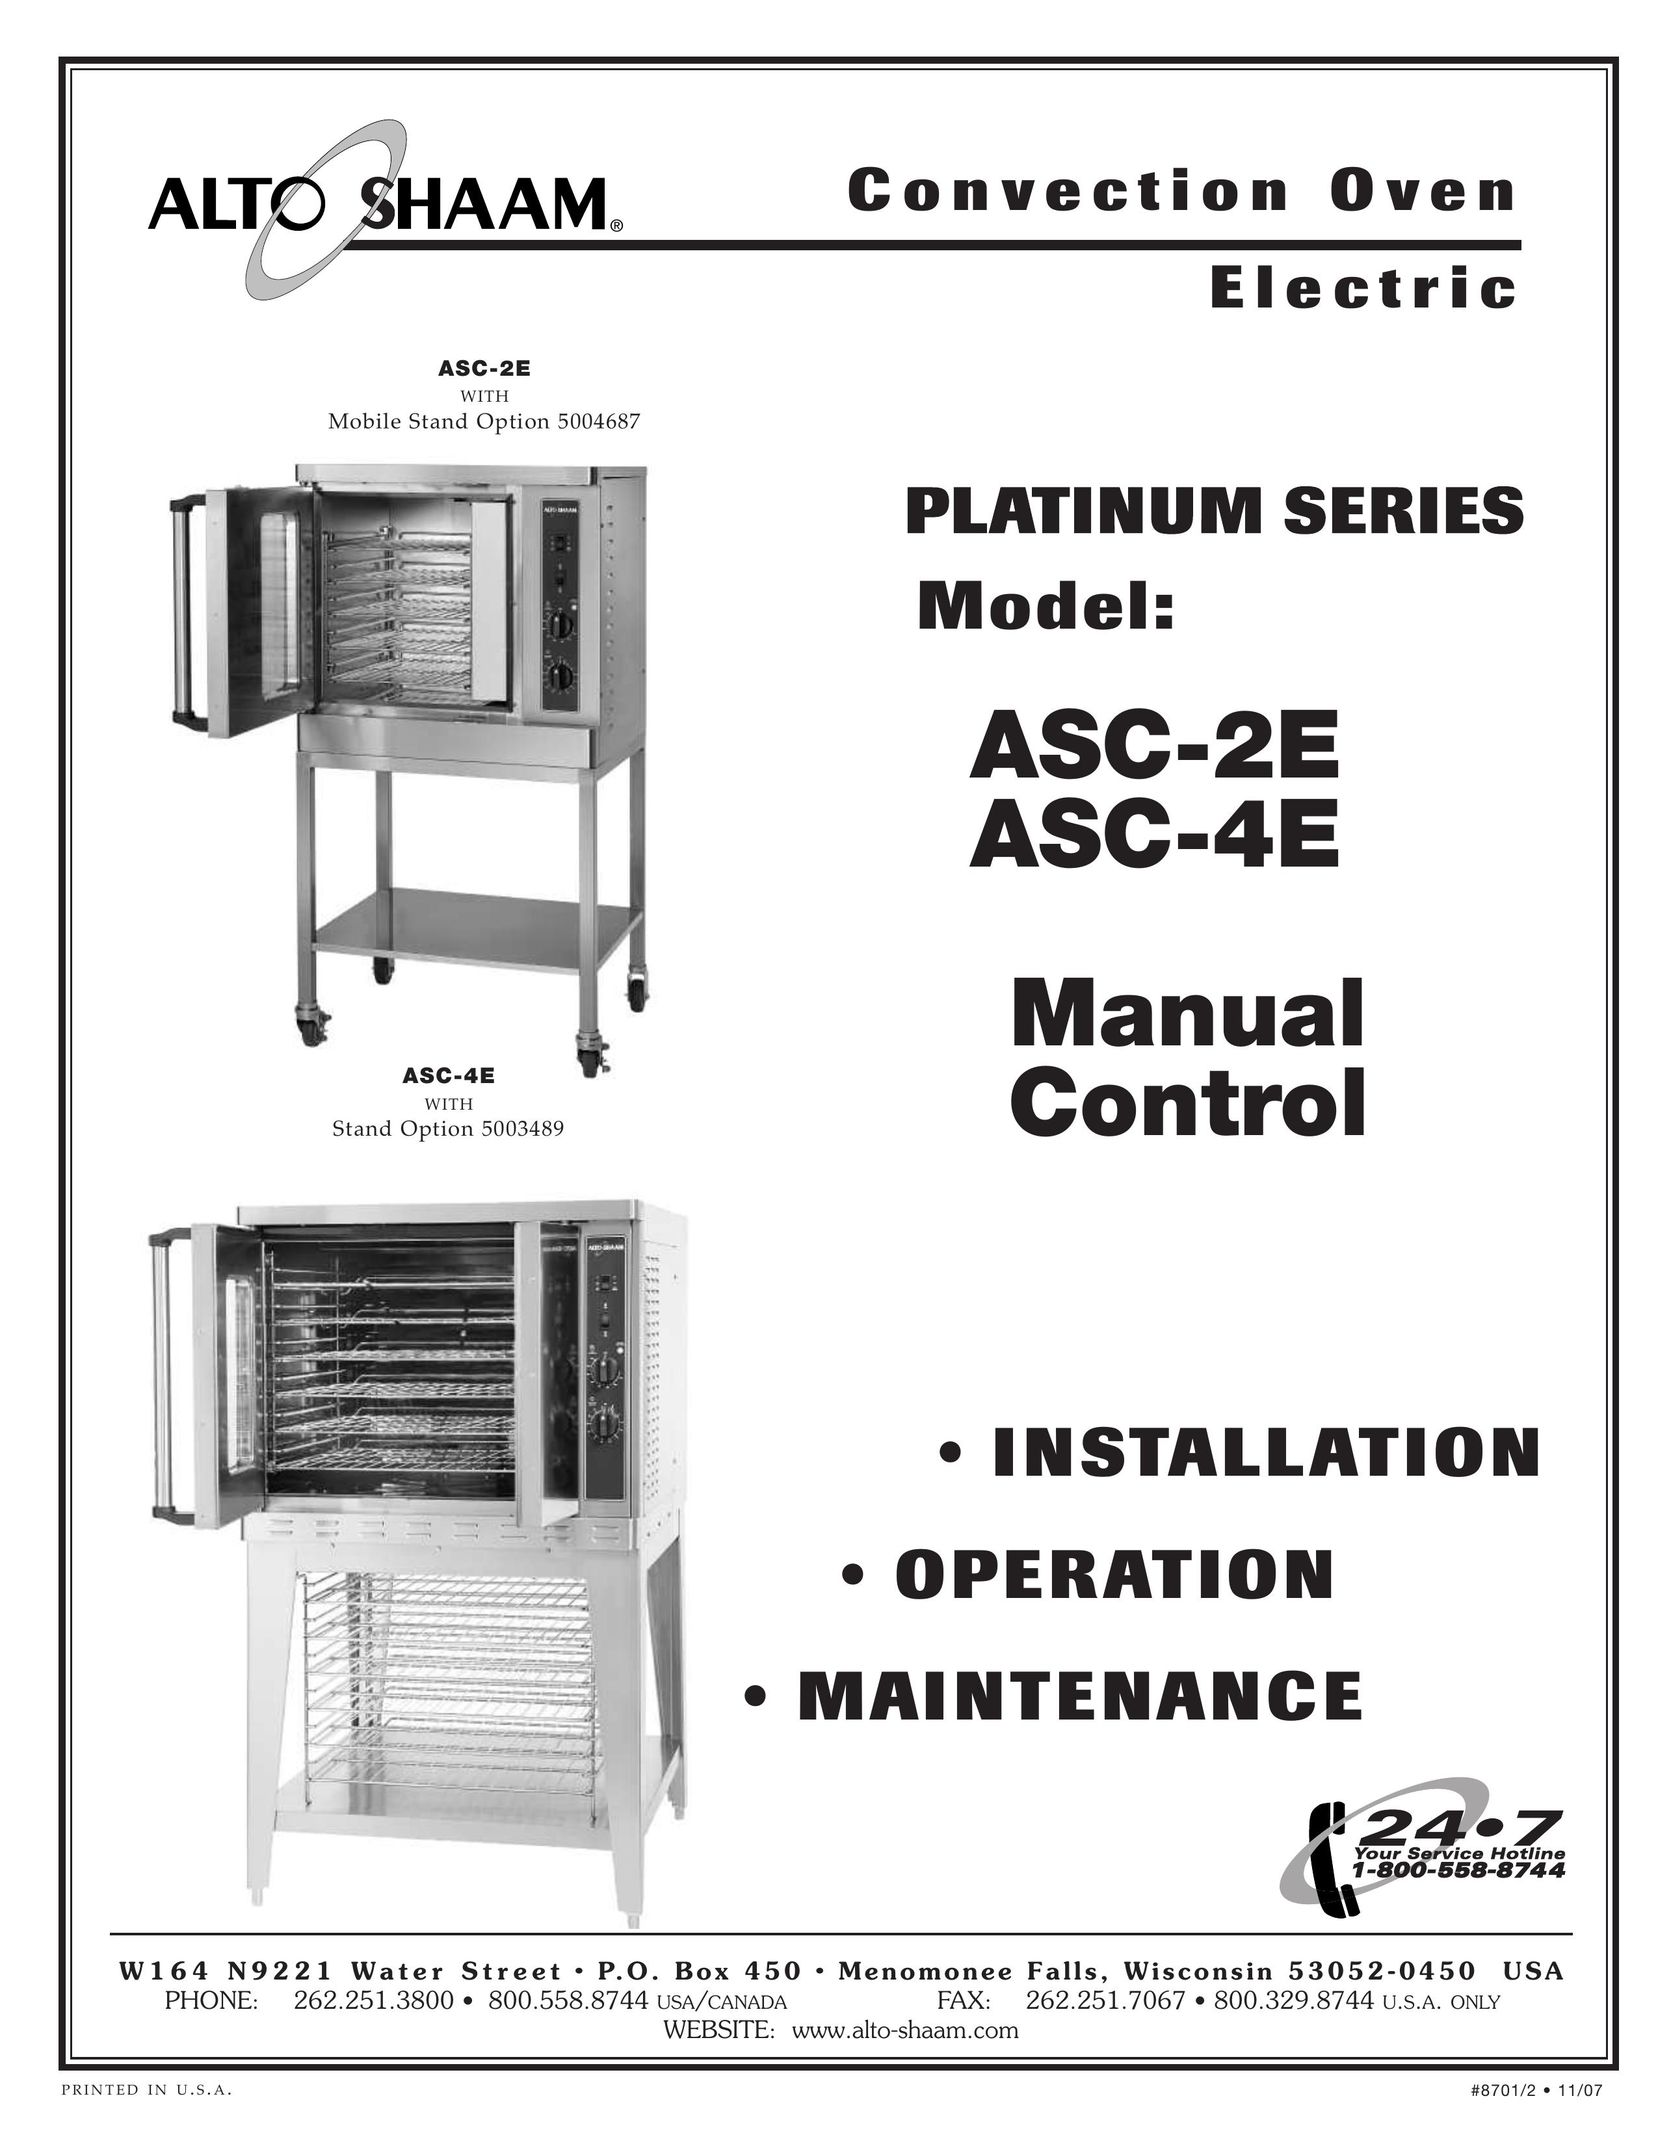 Cisco Systems ASC-4E Convection Oven User Manual